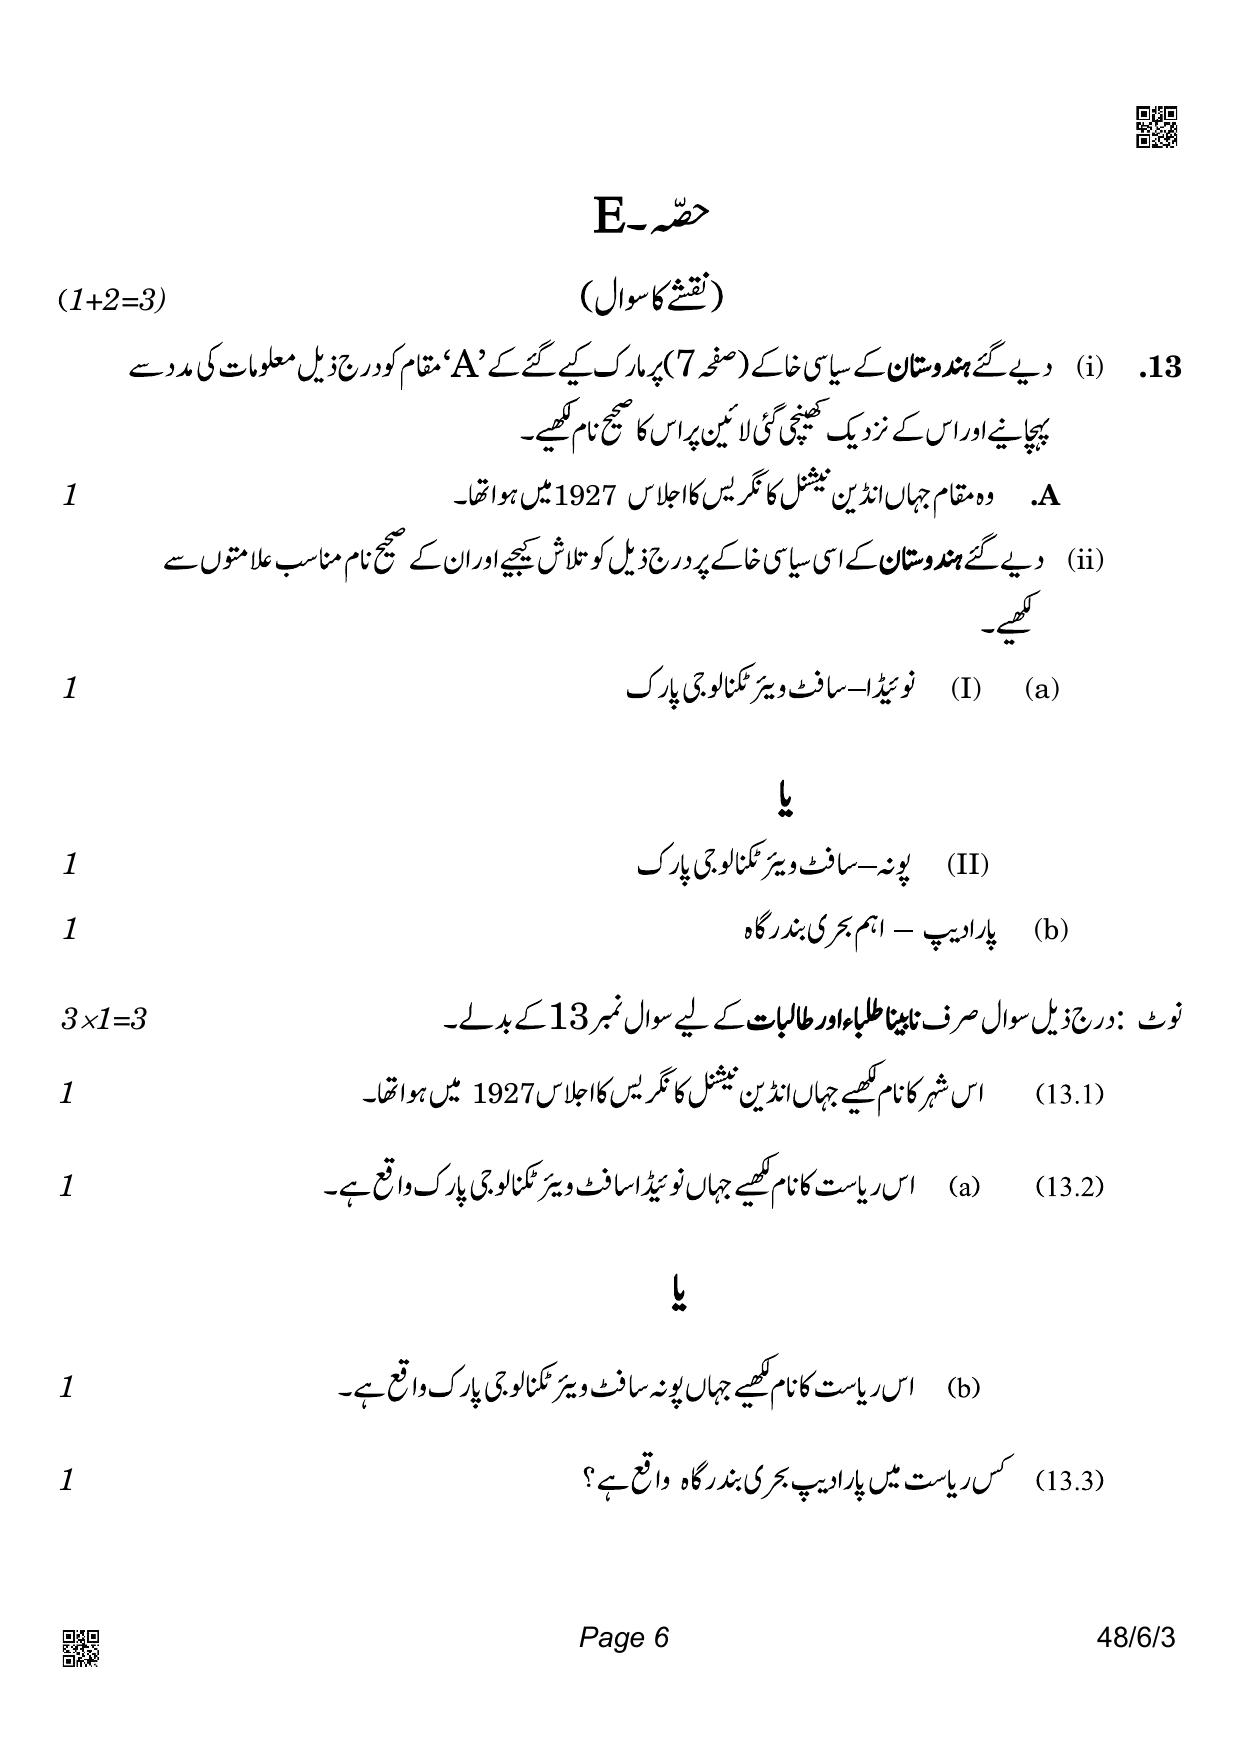 CBSE Class 10 48-6-3_Social Science Urdu Version 2022 Compartment Question Paper - Page 6